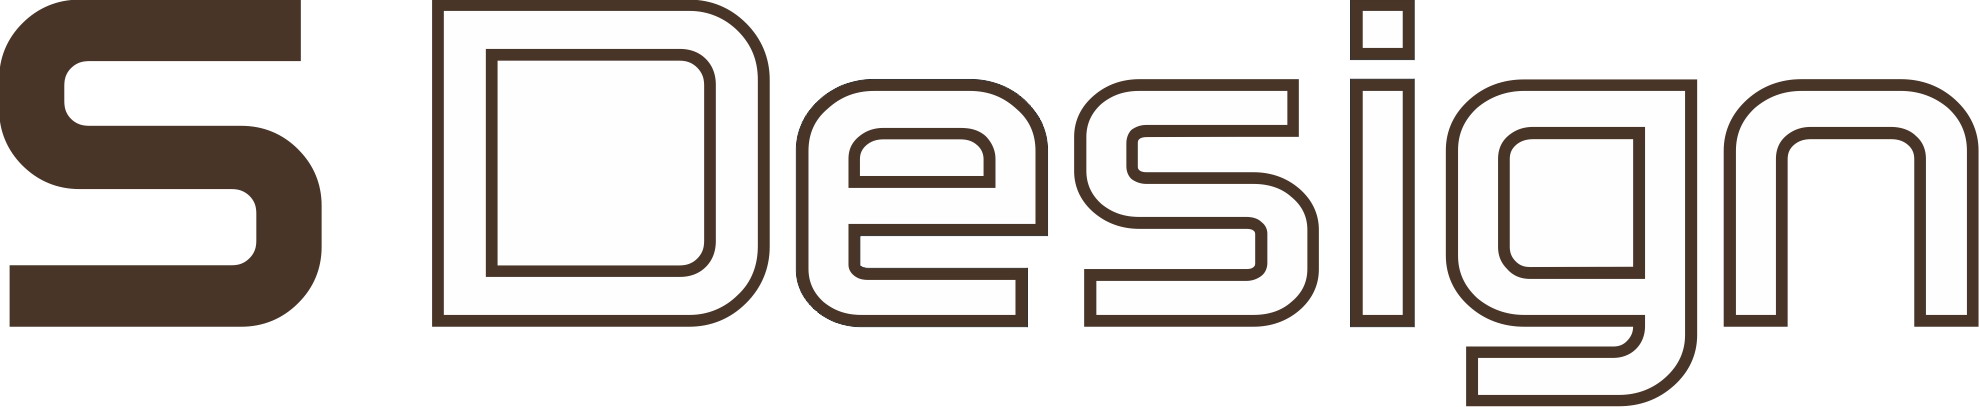 Logo uj